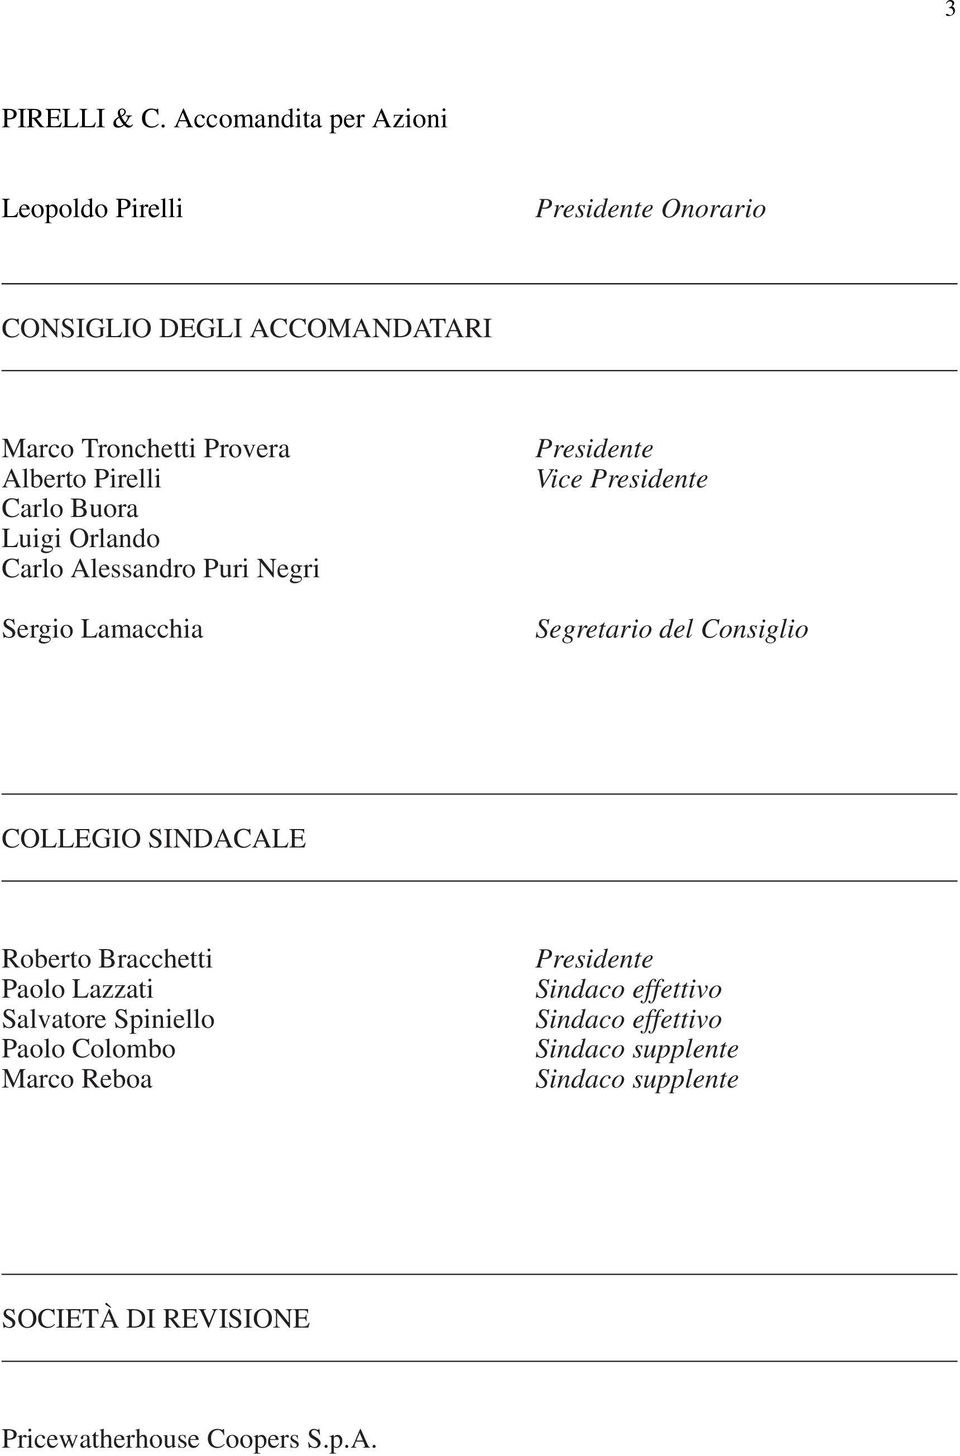 Pirelli Carlo Buora Luigi Orlando Carlo Alessandro Puri Negri Sergio Lamacchia Presidente Vice Presidente Segretario del